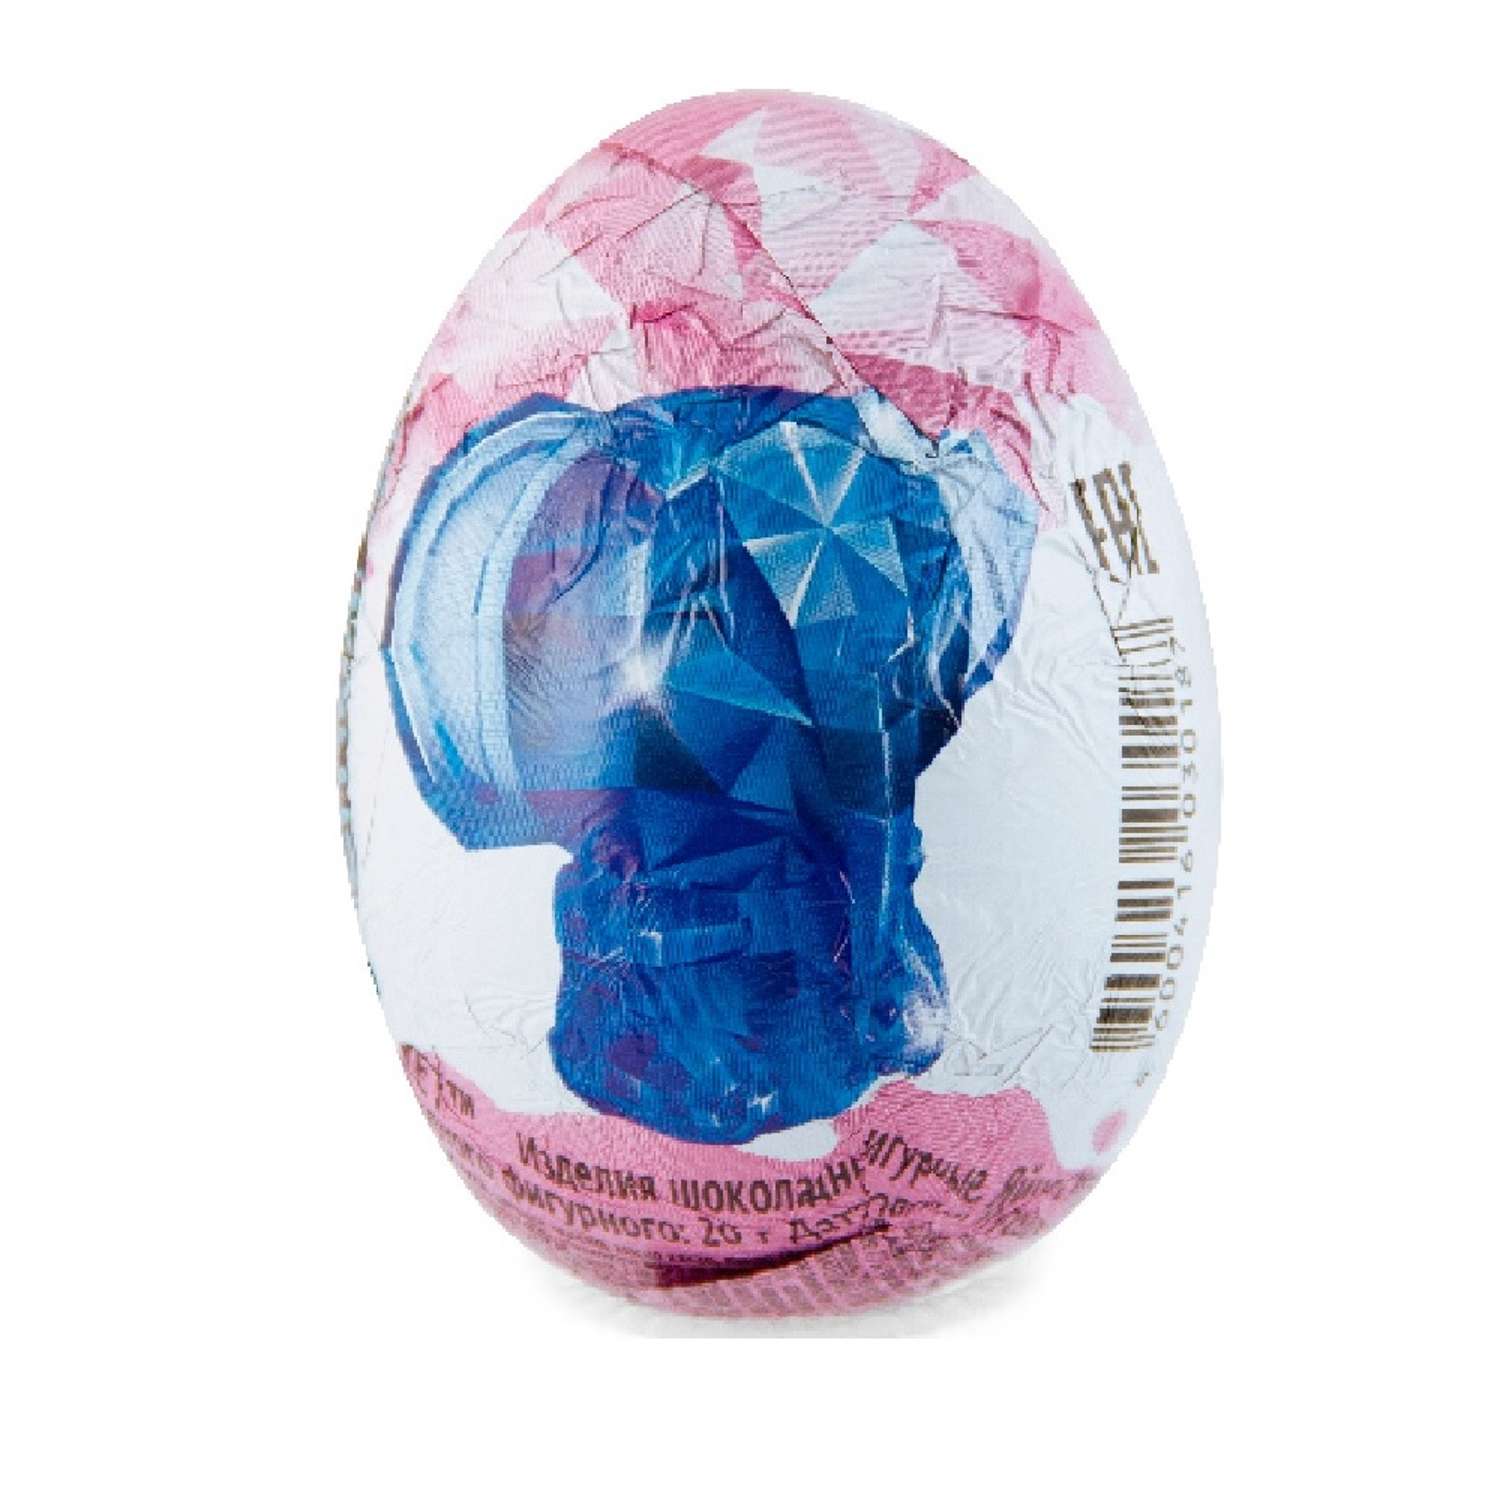 Шоколадное яйцо с игрушкой Сладкая сказка Mega secret кристалята 20г - фото 3